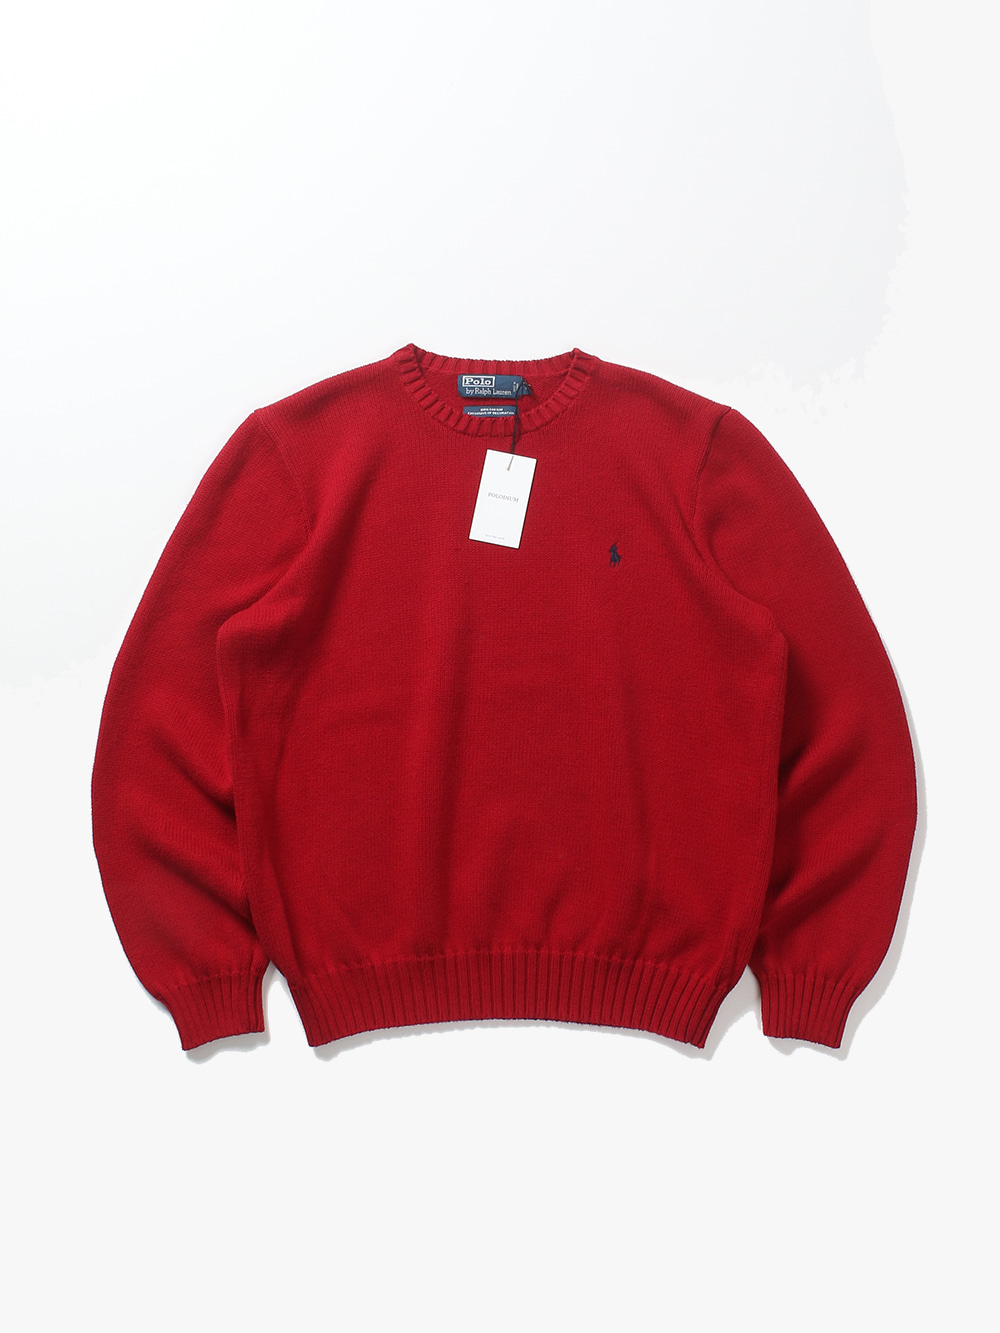 [ XL ] Polo Ralph Lauren Sweater (6449)